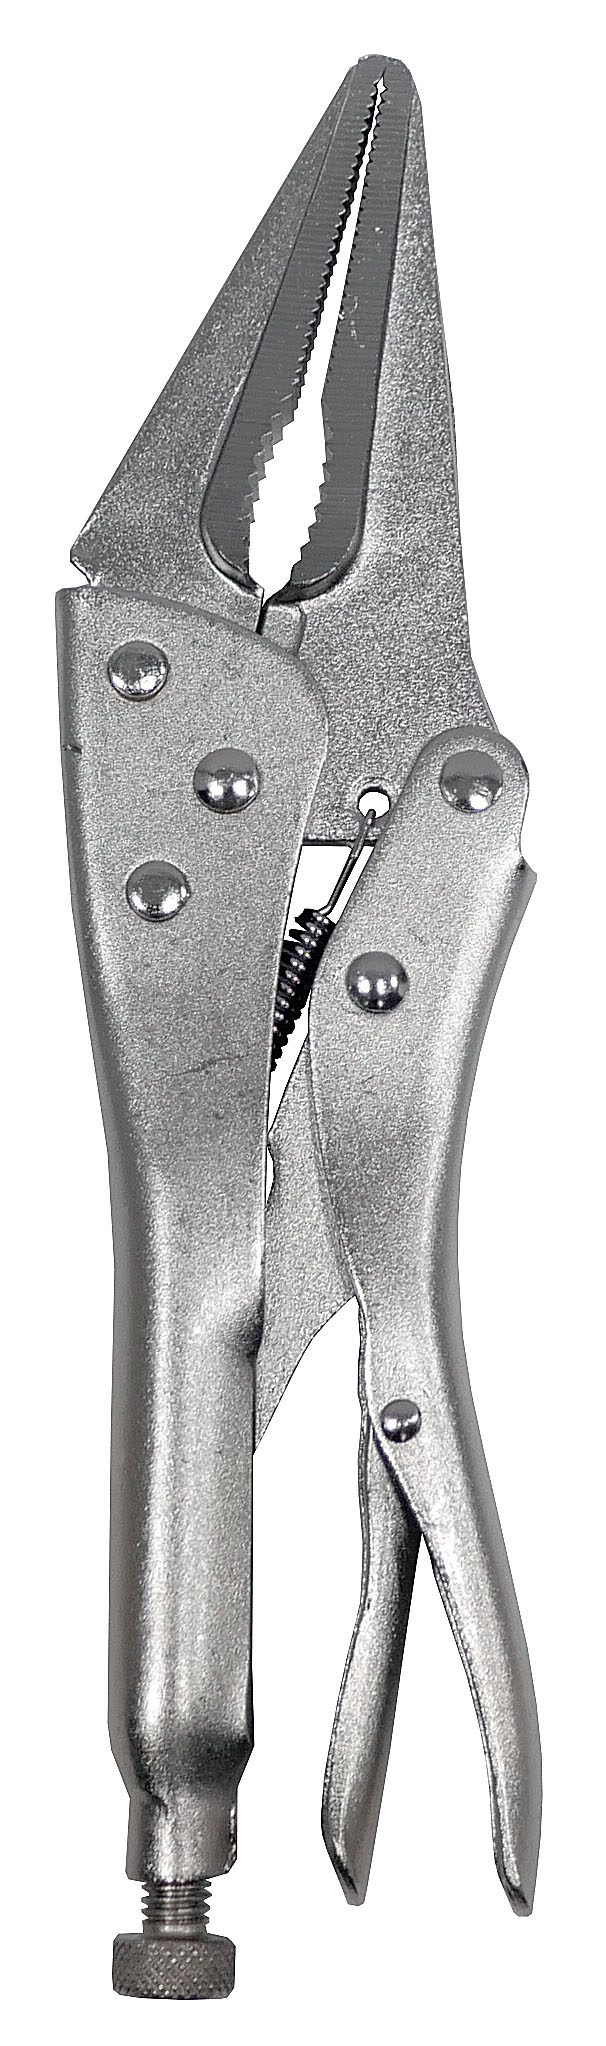 Клещи Энкор зажимные 230 мм с удлиненными губками - 2 шт. перчатка щетка для шерсти на правую руку с удлиненными зубчиками красная